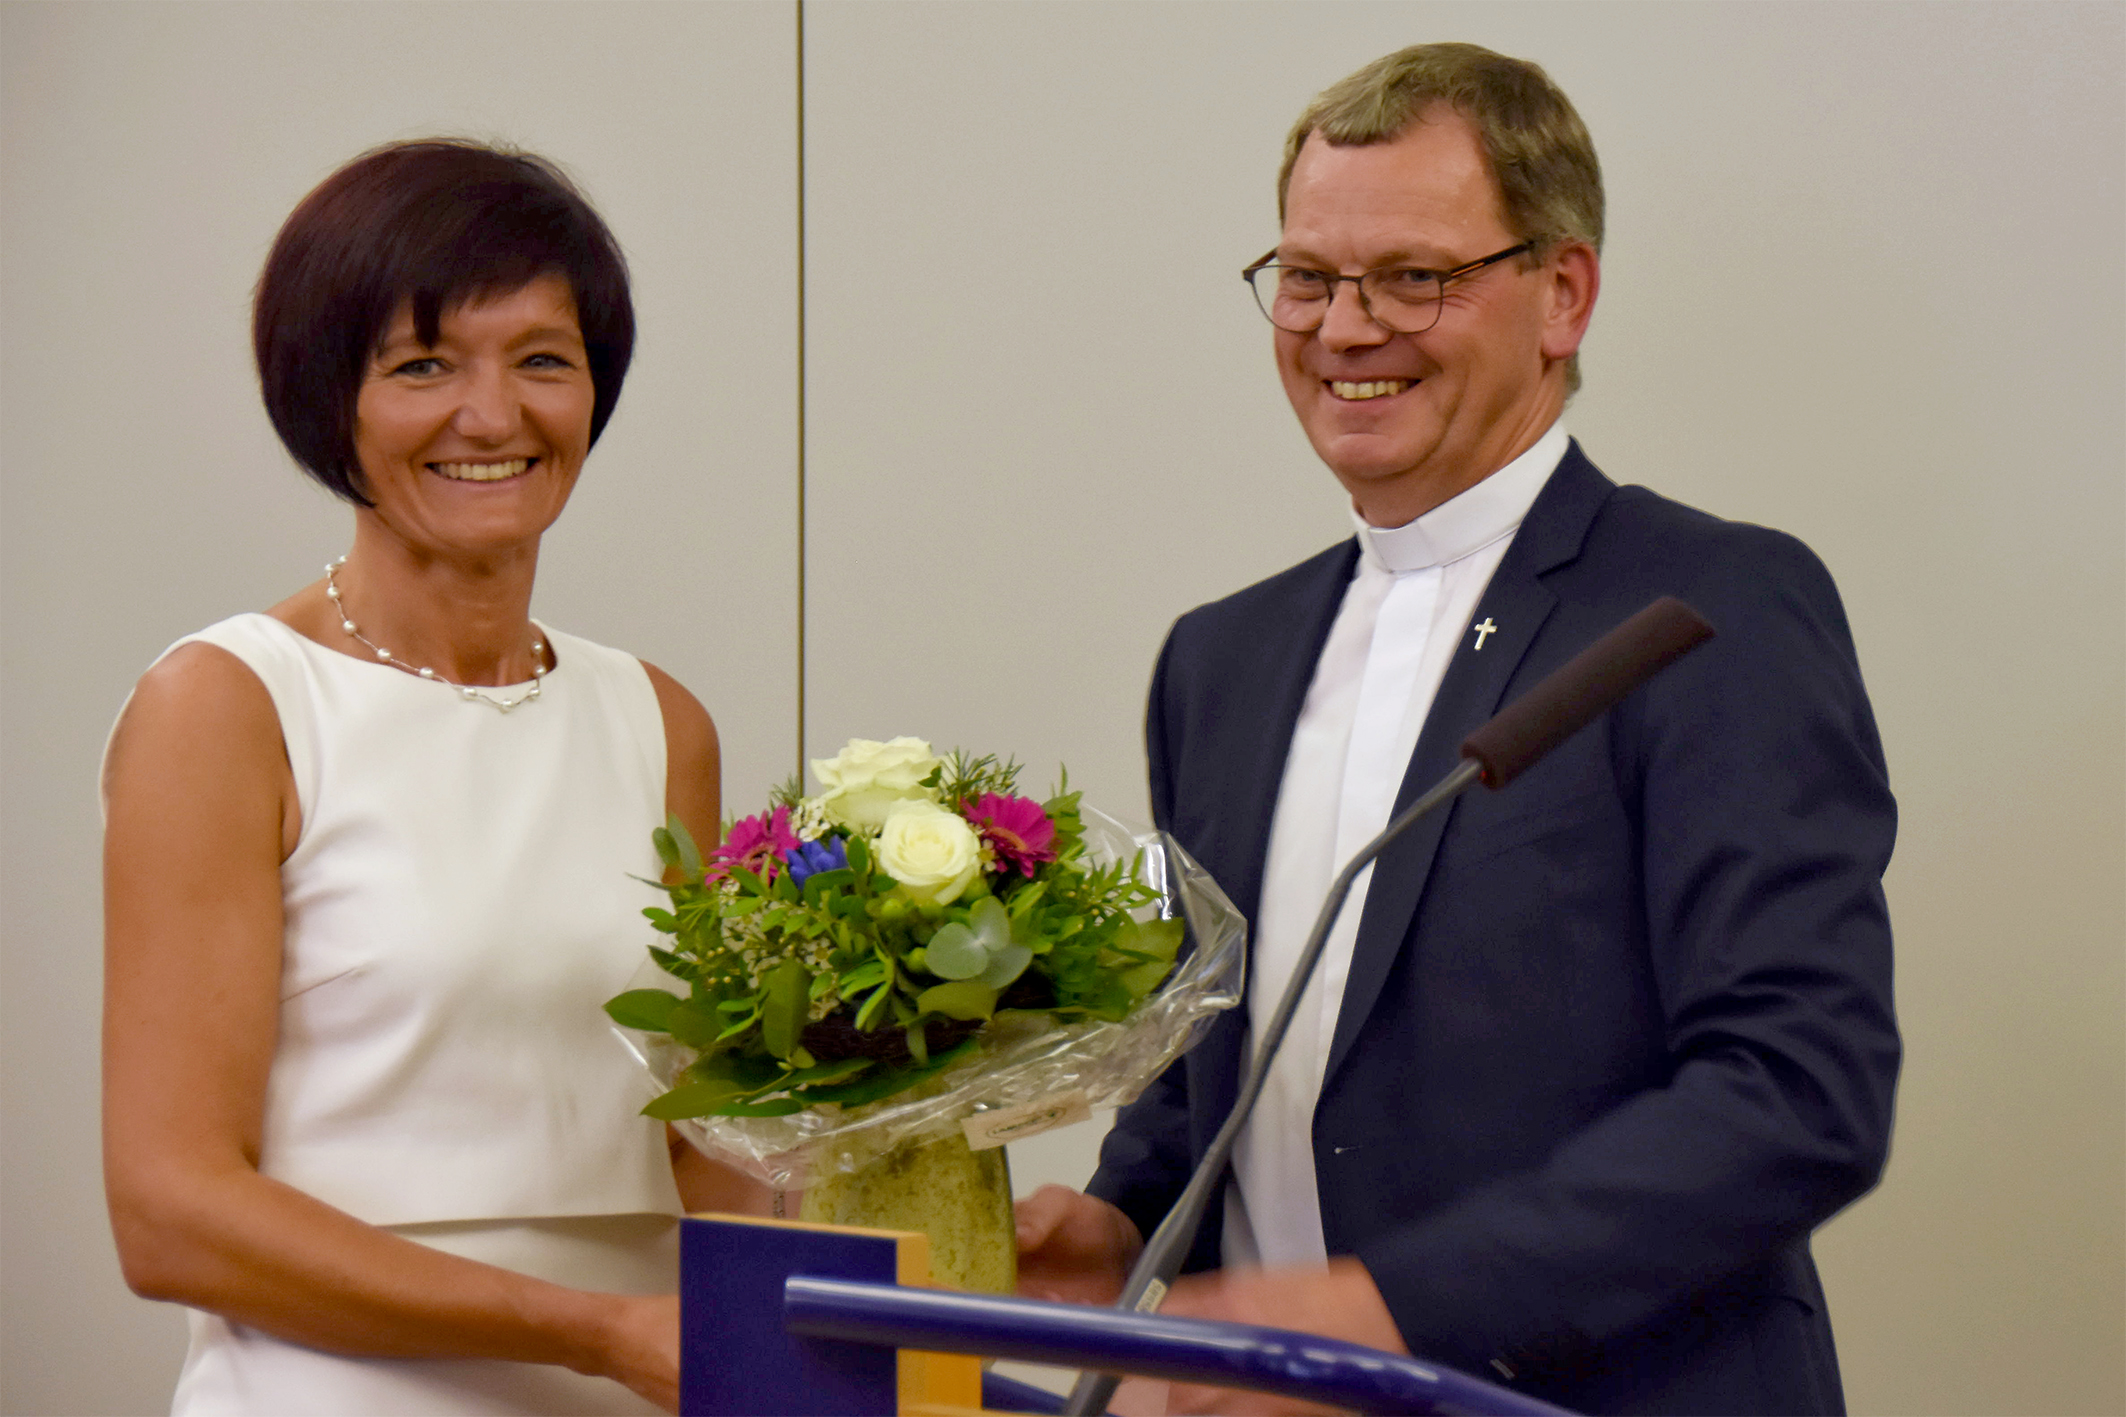 Generalvikar Dr. Ulrich Graf von Plettenberg überreichte der neuen Leiterin des Katholischen Büros, Katja Göbel, einen Strauß Blumen